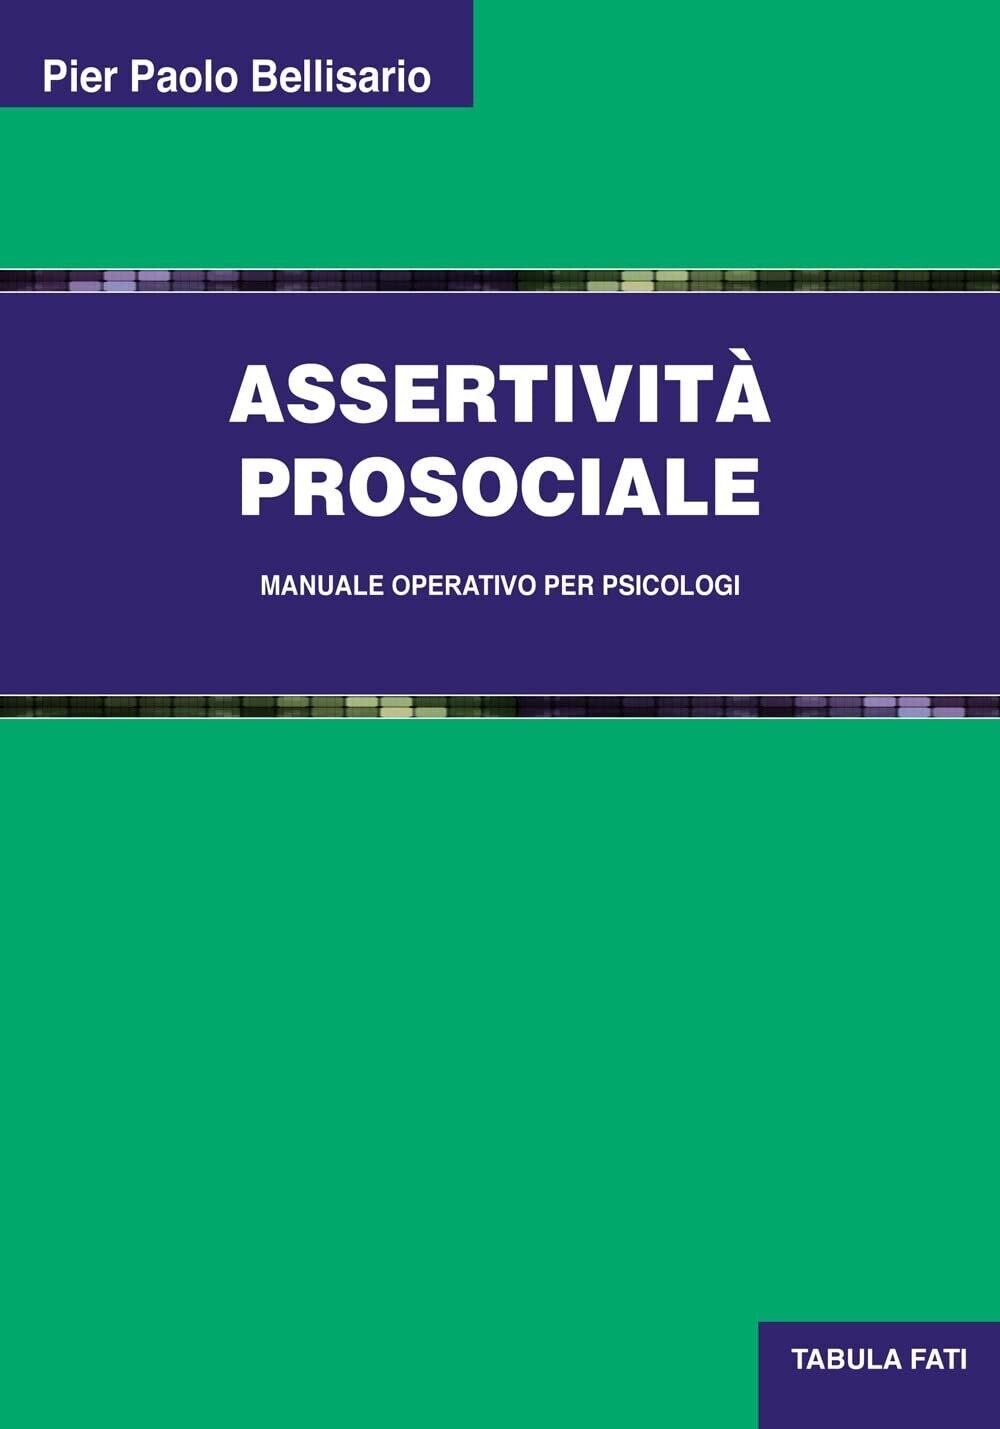 Assertivit? prosociale di Pier Paolo Bellisario,  2021,  Tabula Fati